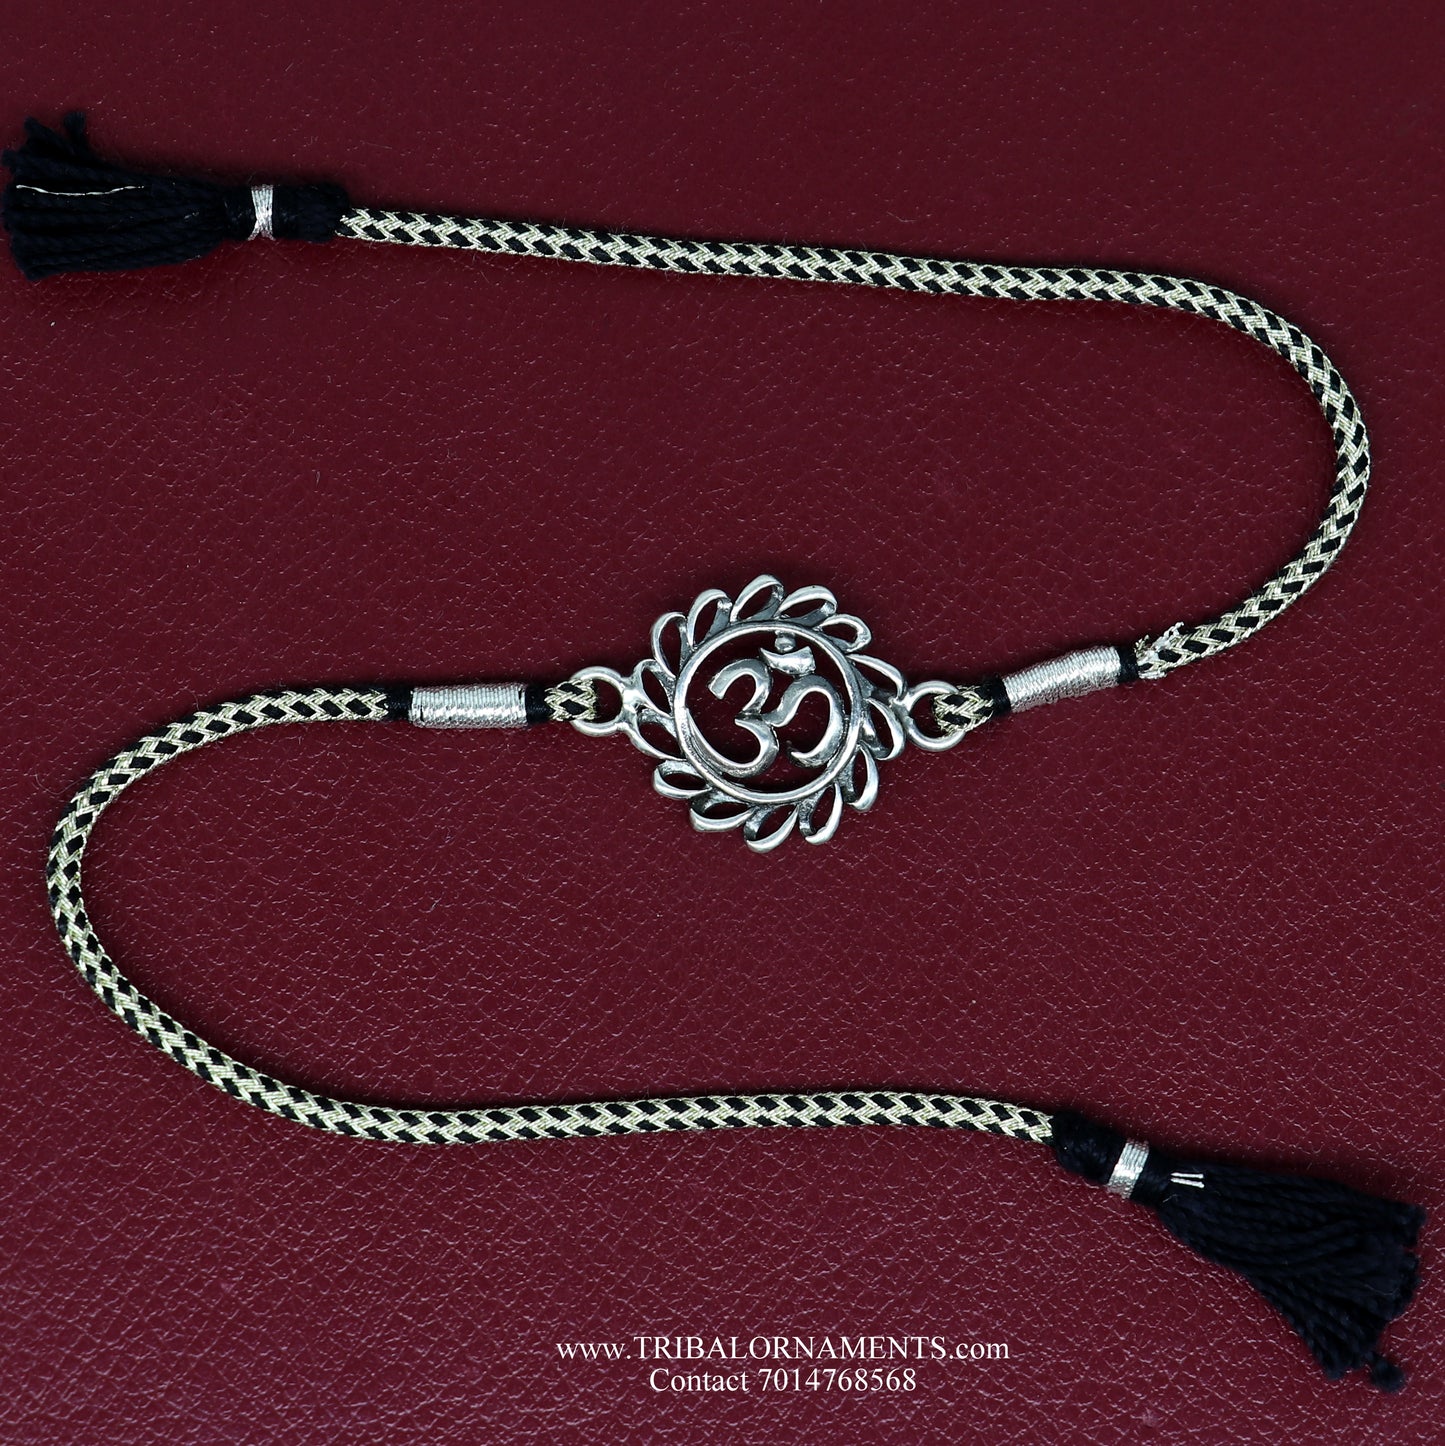 925 sterling silver handmade AUM design Rakhi Bracelet, amazing stylish gift for Rakshabandhan rk71 - TRIBAL ORNAMENTS